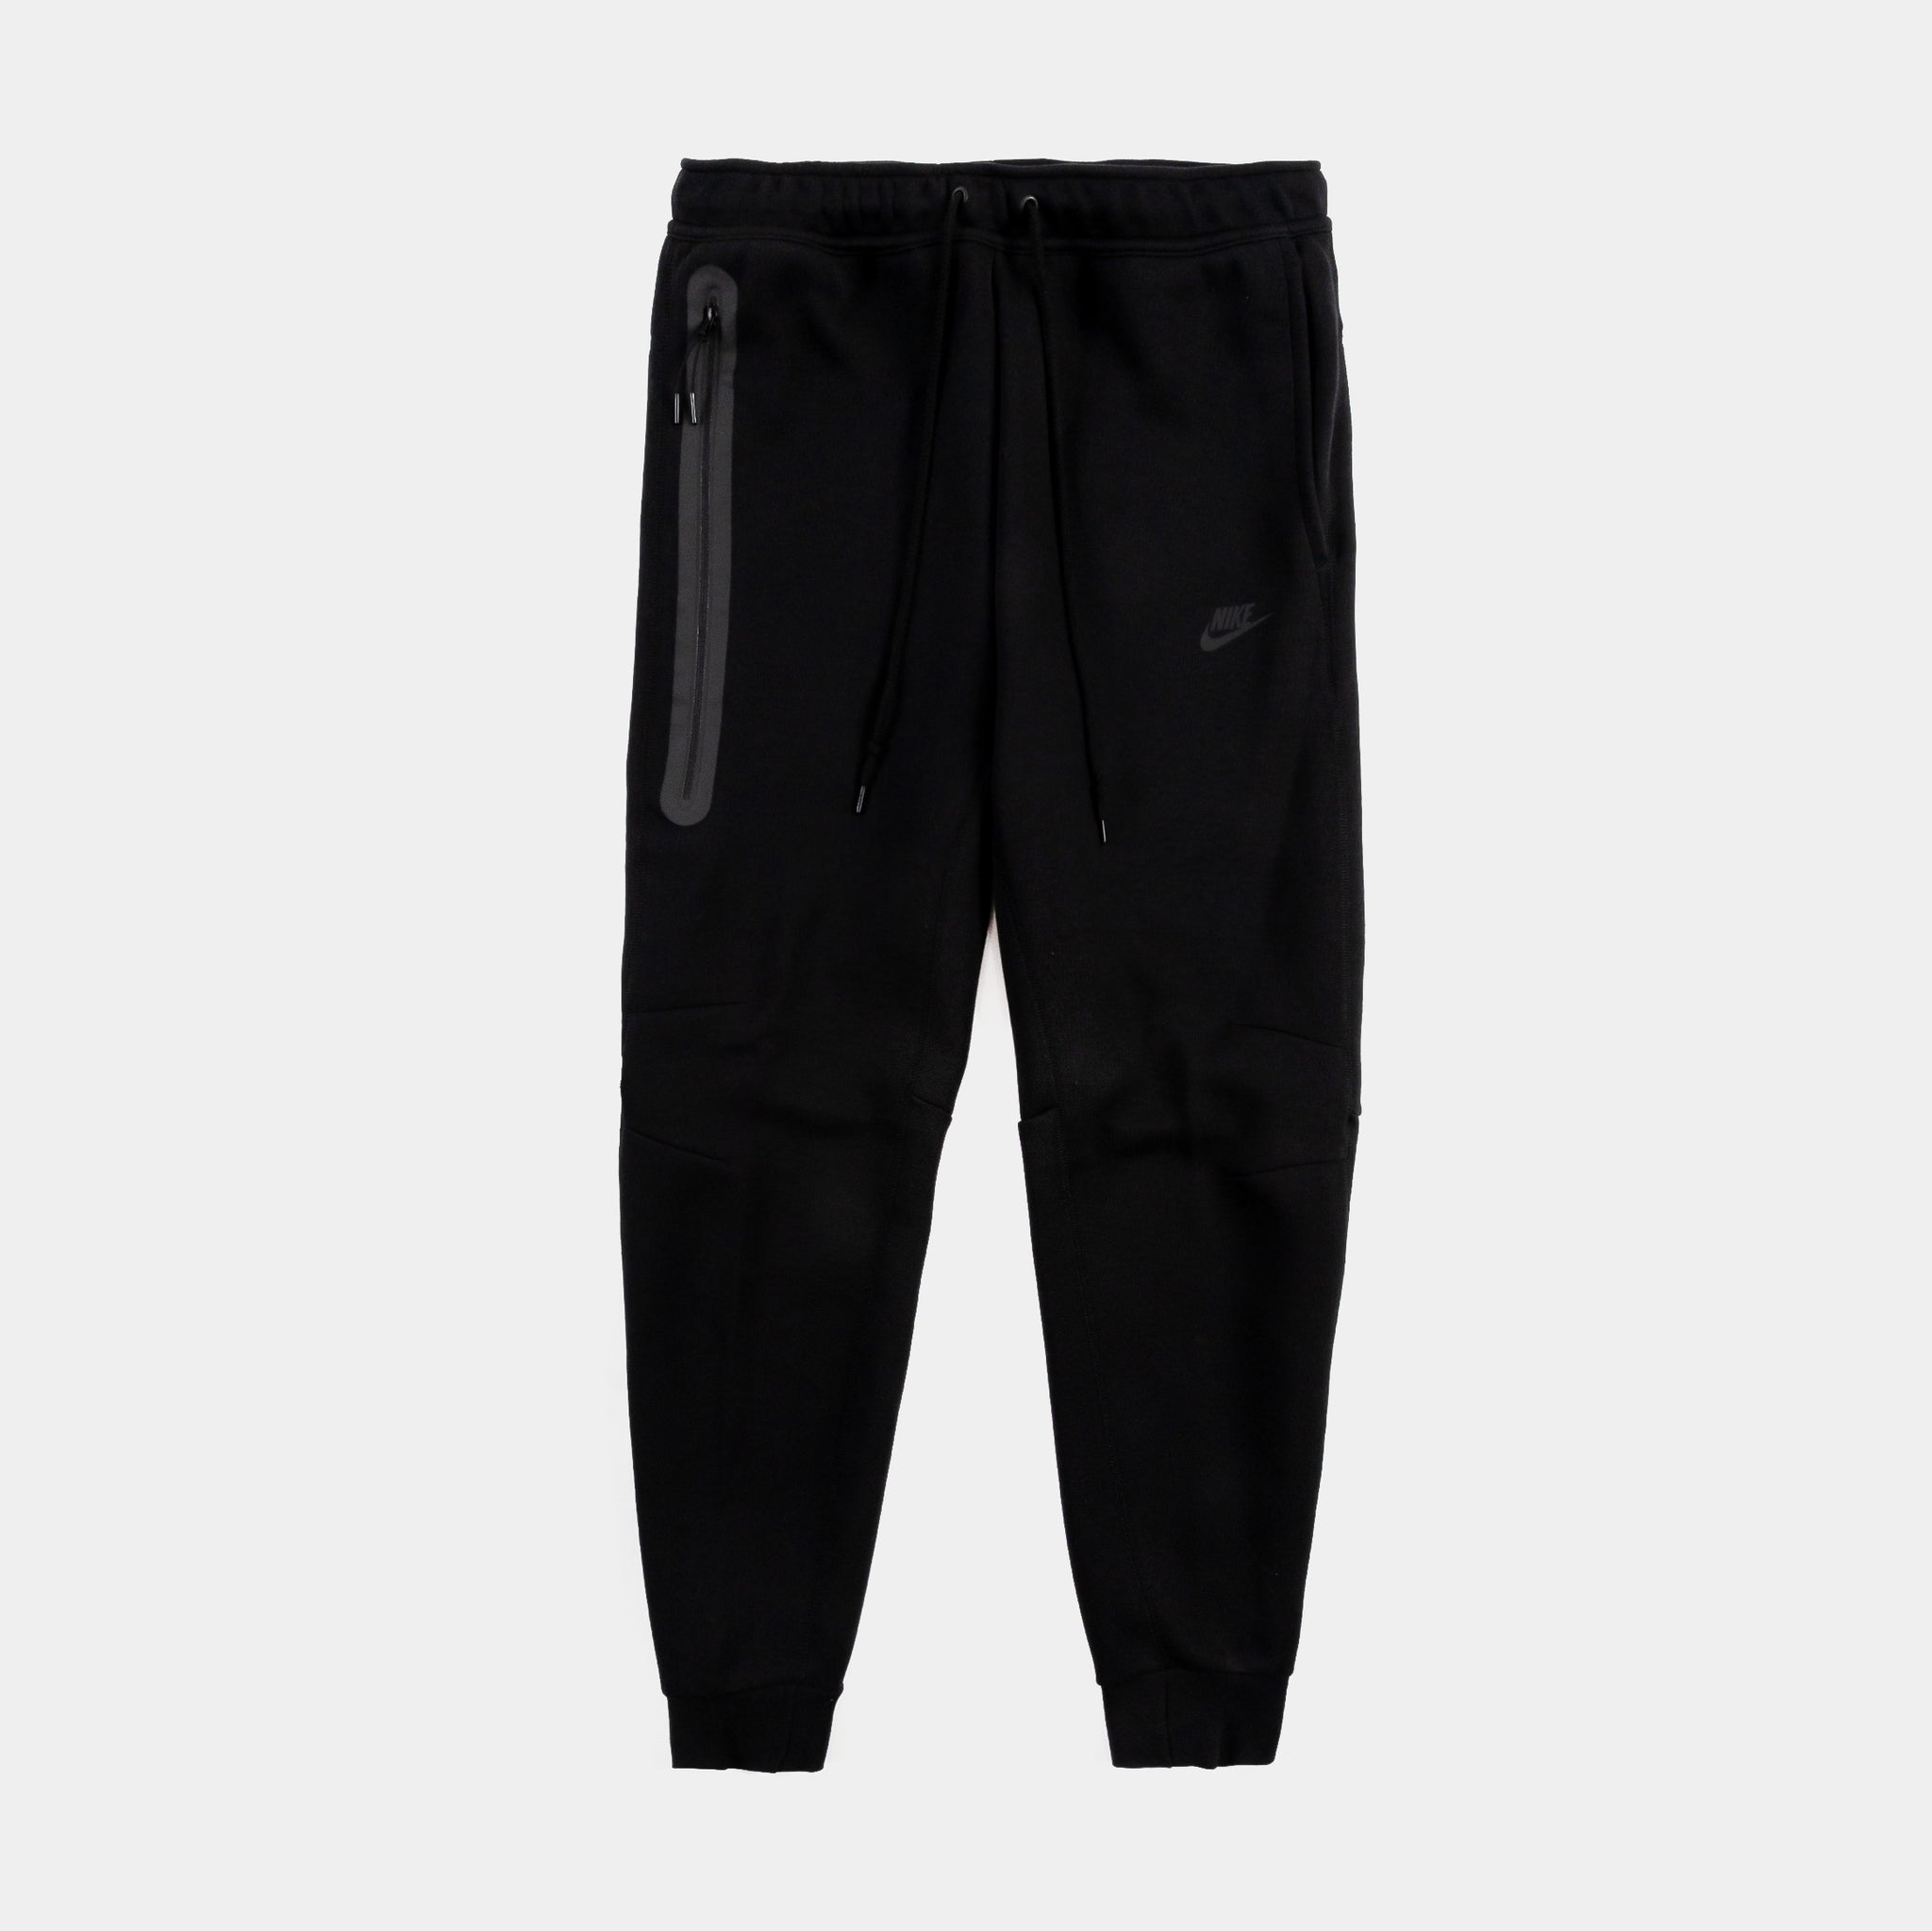 Nike Sportswear Tech Fleece Men's Joggers Black 805162-010 